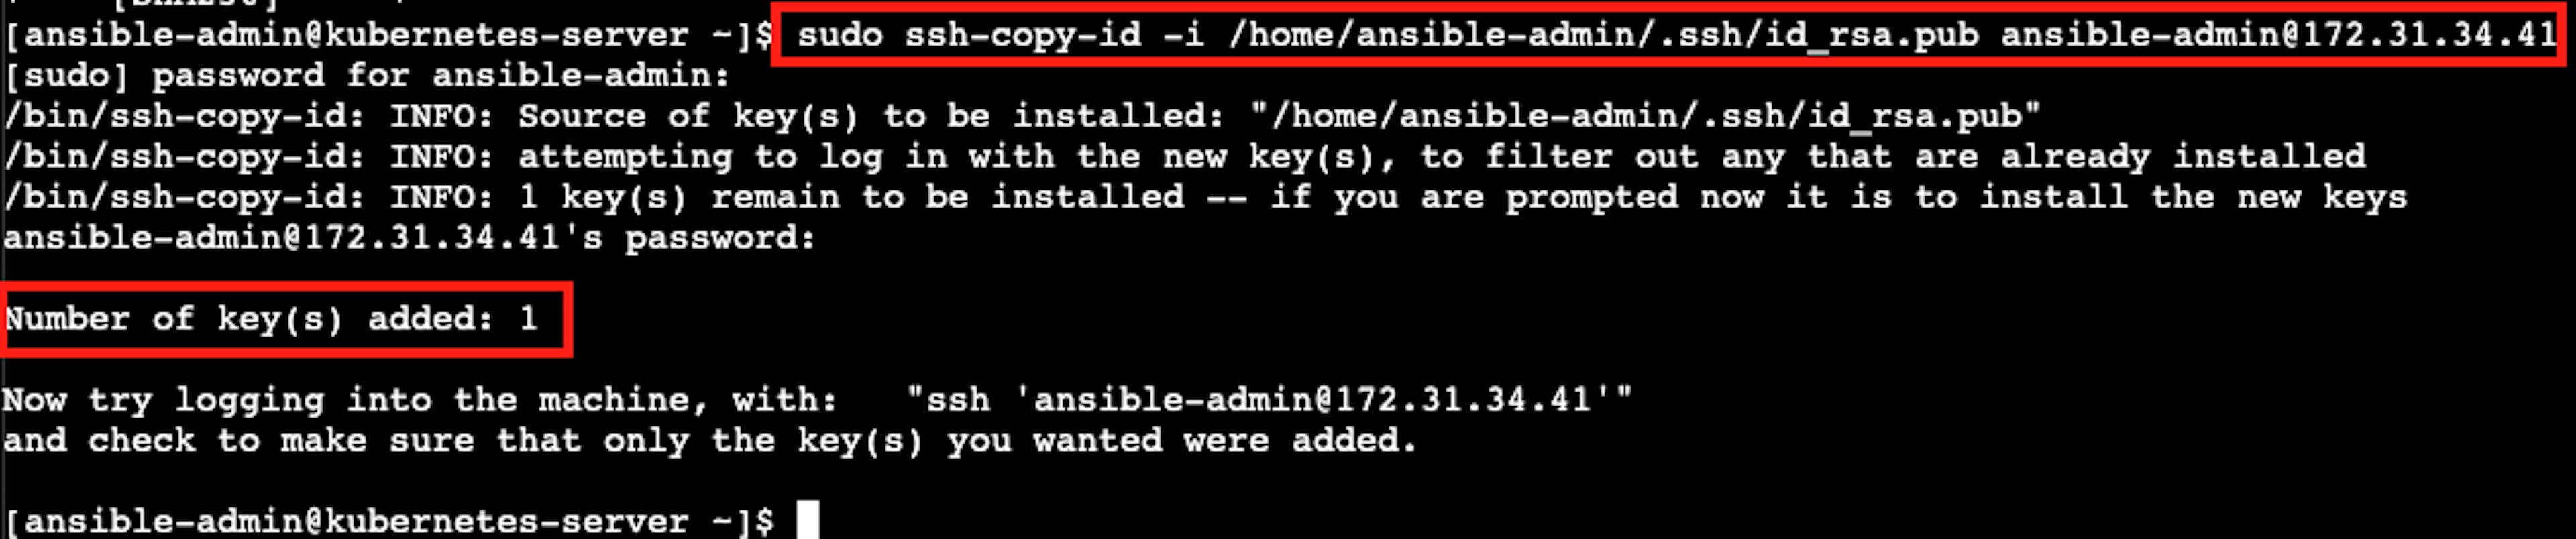 A captura de tela do resultado bem-sucedido da instalação da autenticação SSH sem senha